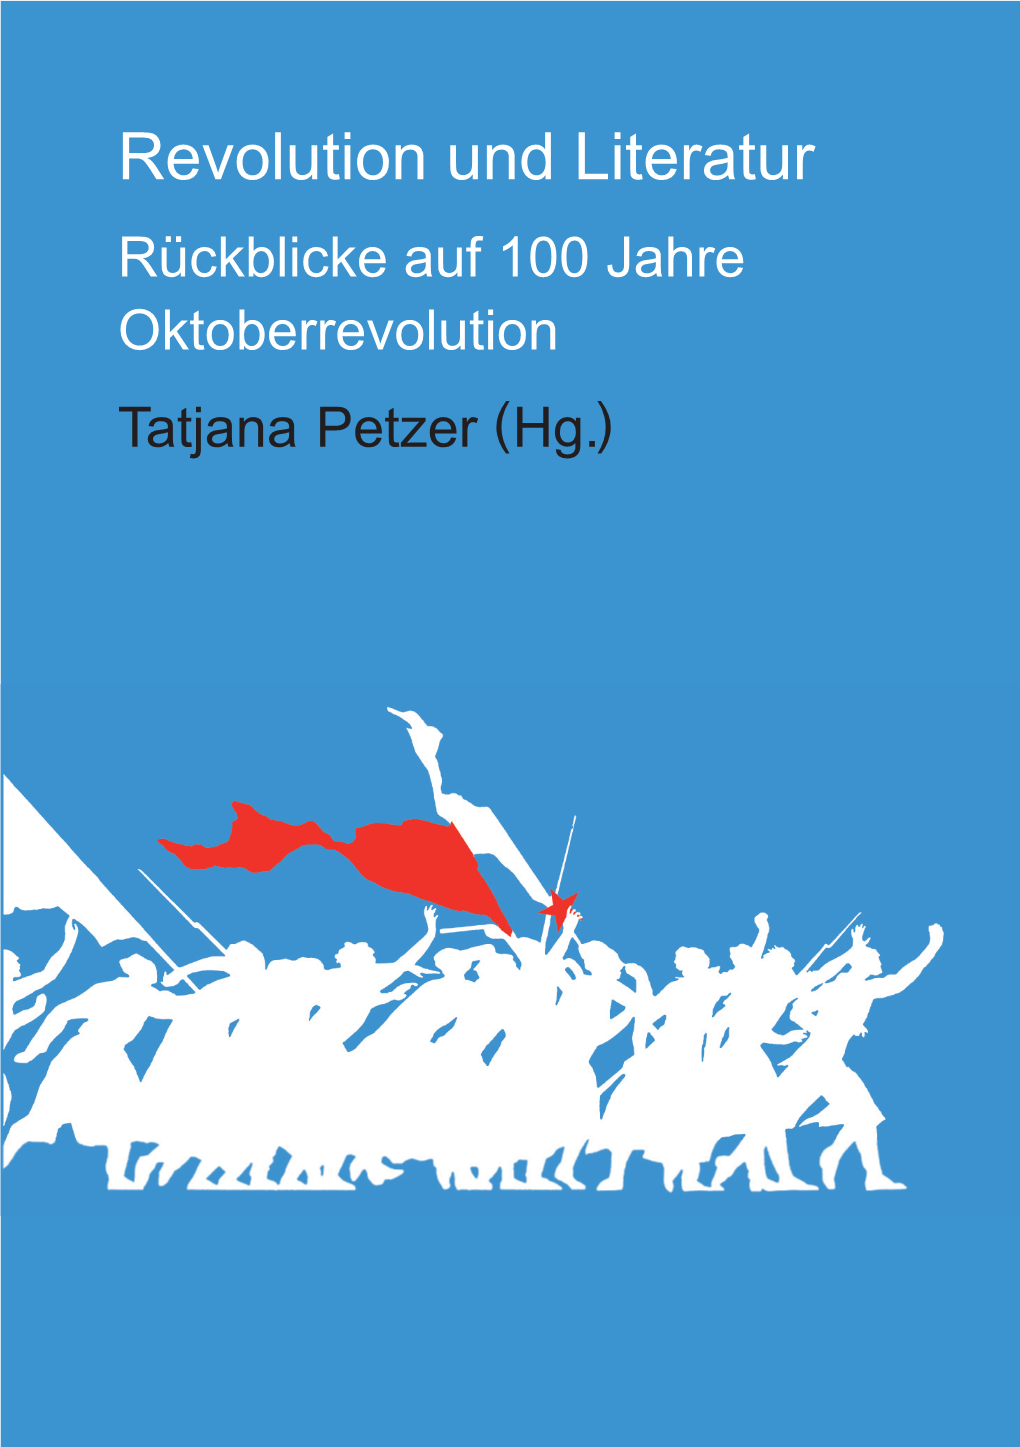 Revolution Und Literatur Rückblicke Auf 100 Jahre Oktoberrevolution Tatjana Petzer (Hg.) Reihe Reflexionen Des Gesellschaftlichen in Sprache Und Literatur